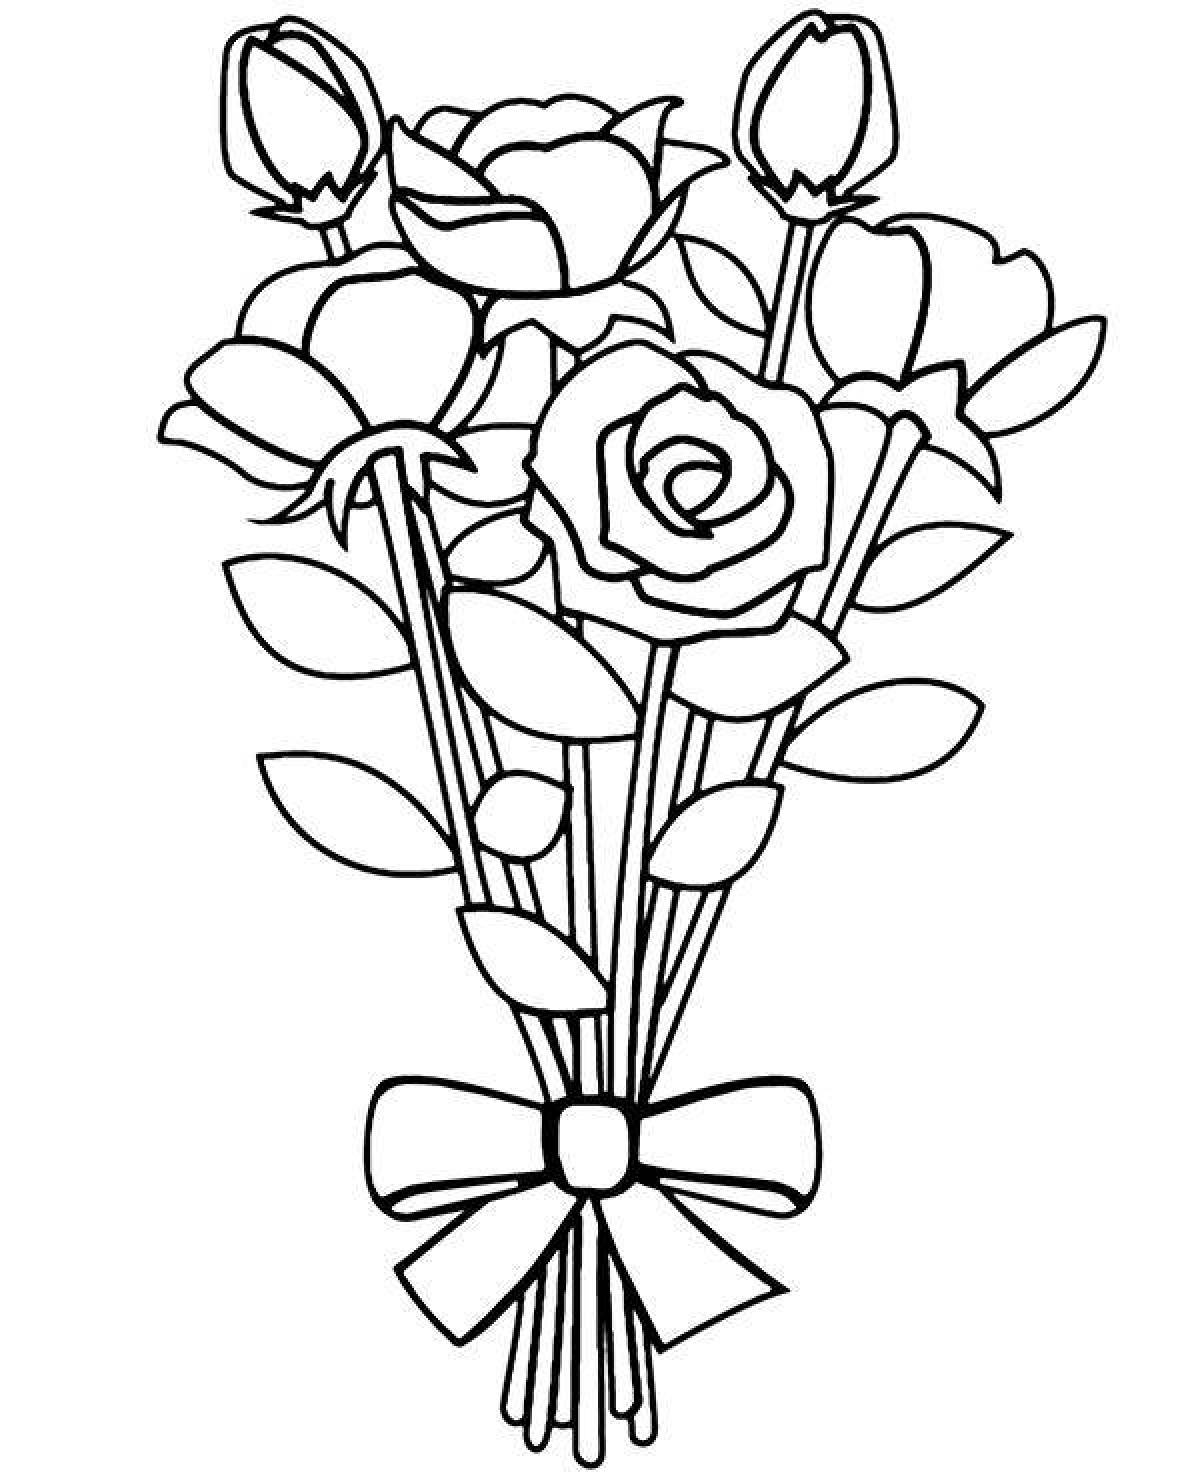 Раскраска ослепительный букет роз